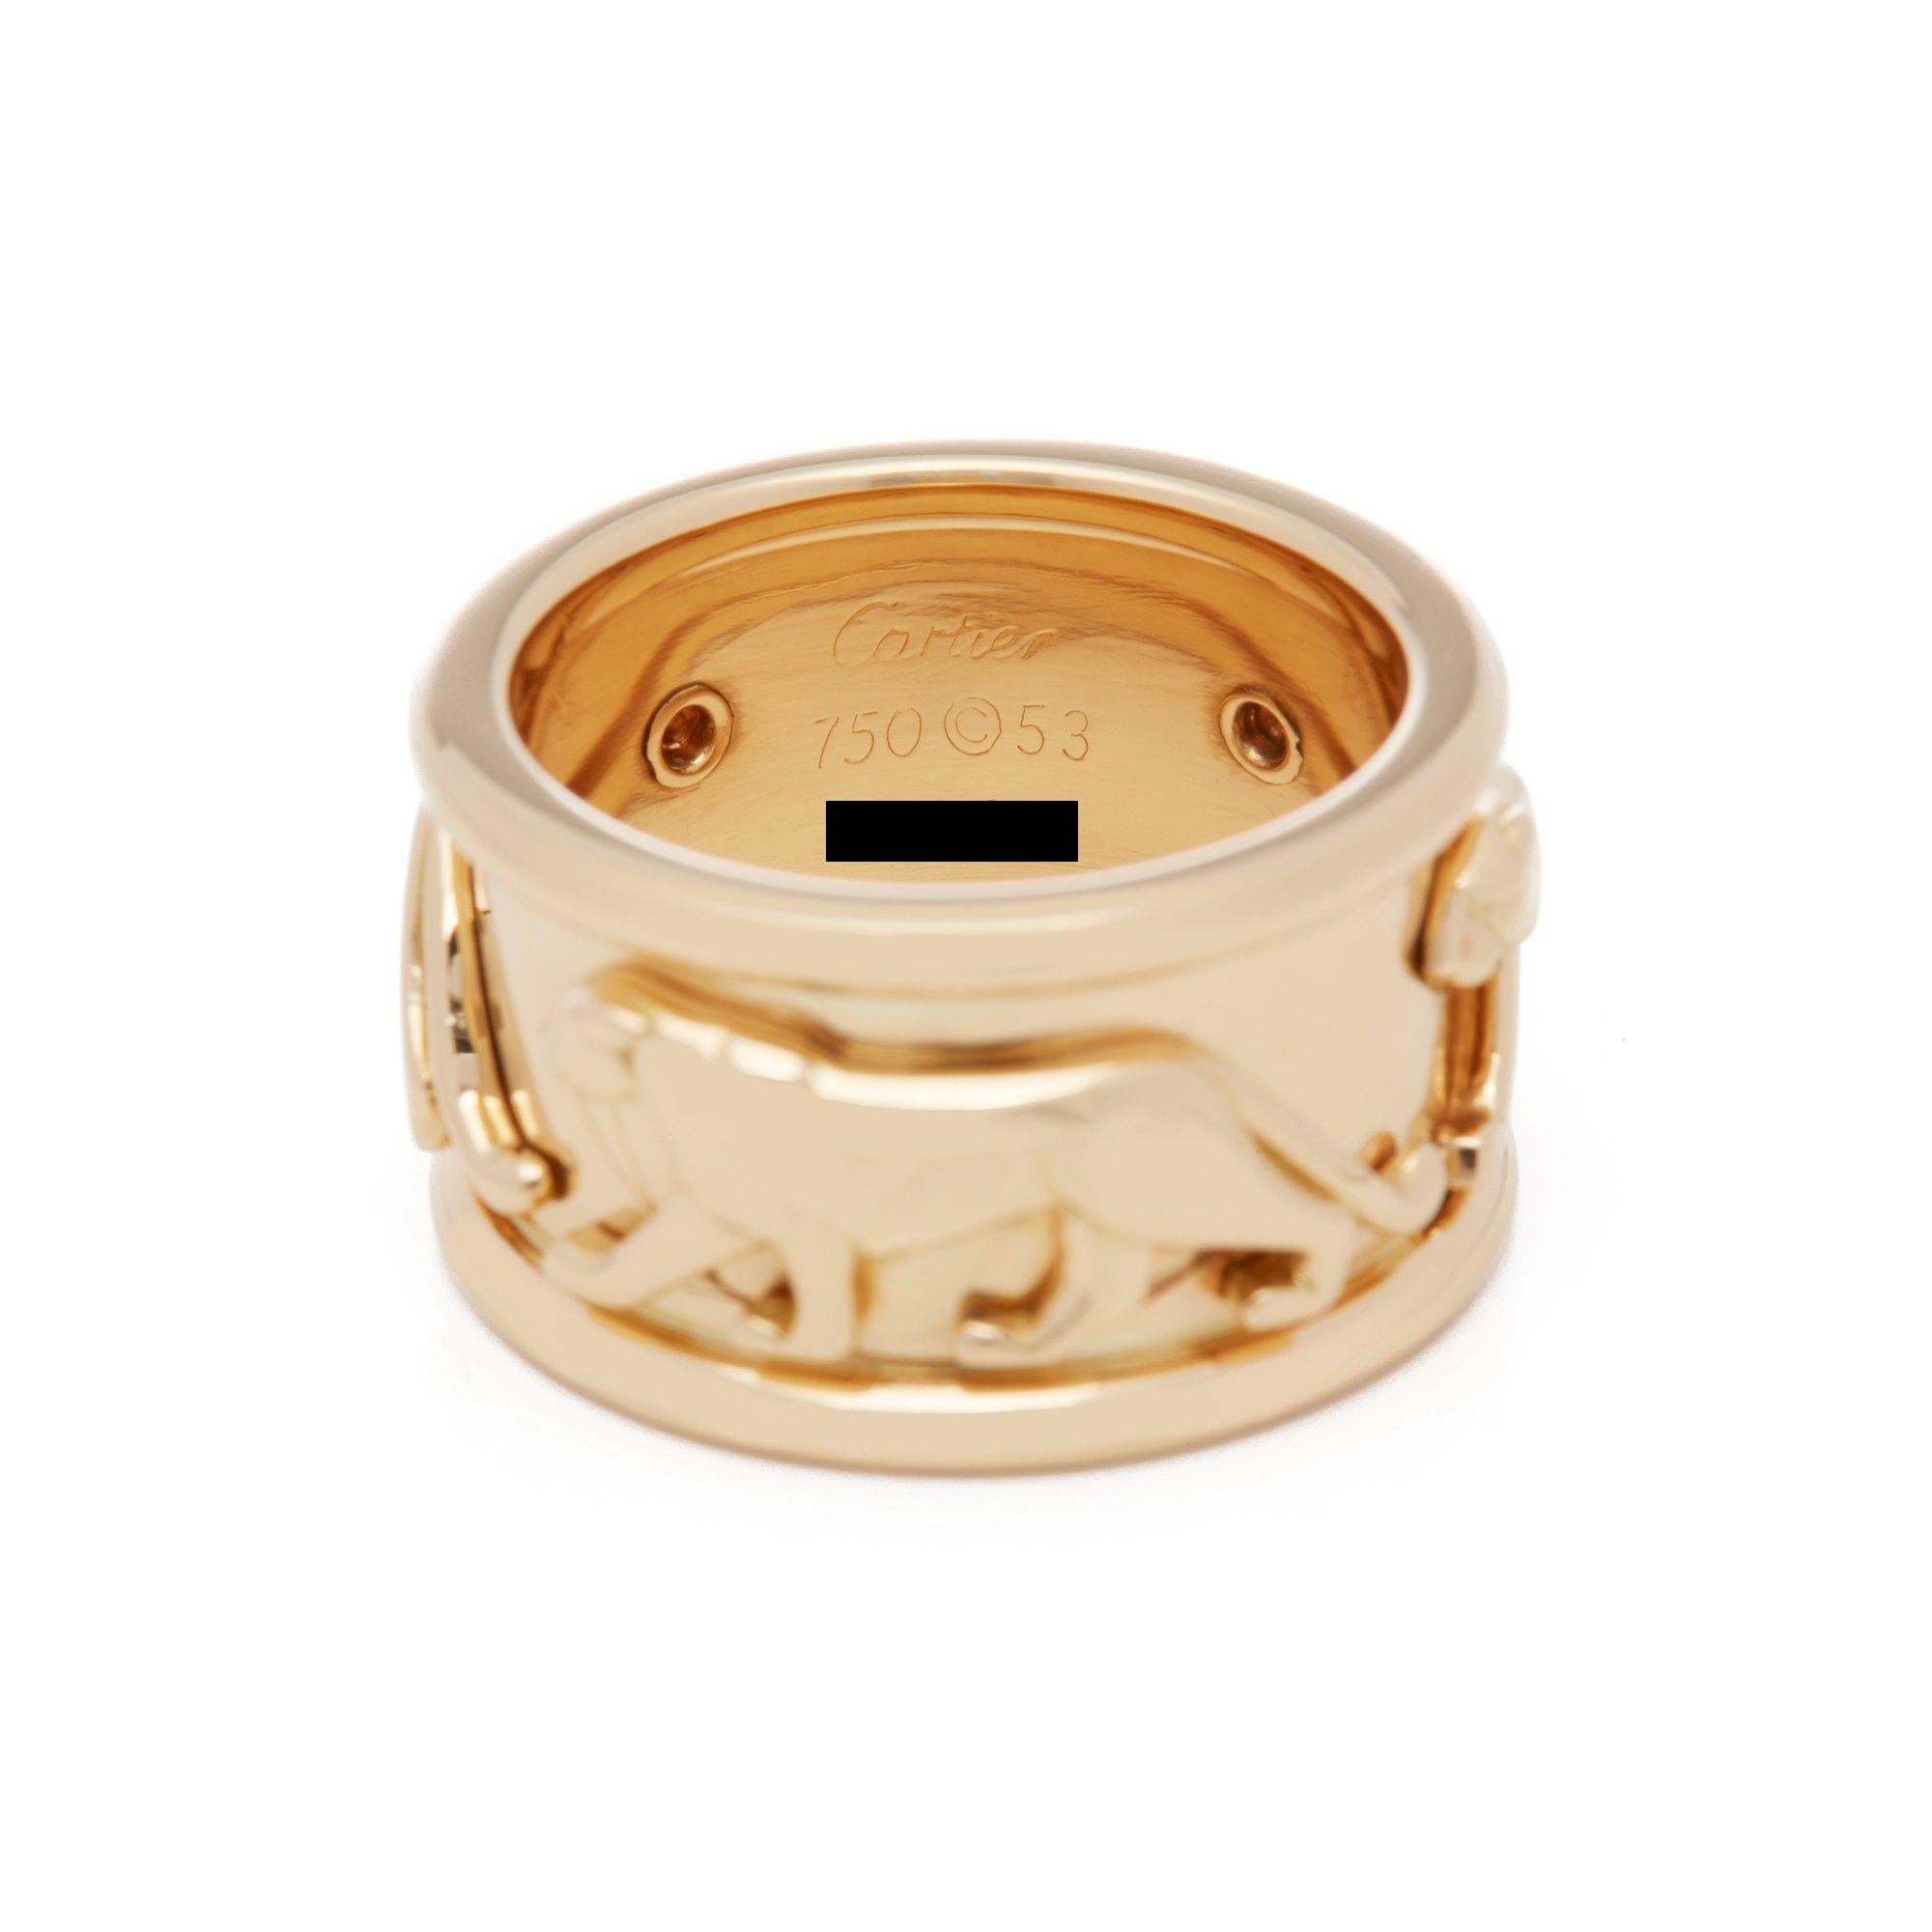 Women's Cartier 18 Karat Yellow Gold Panthere Ring